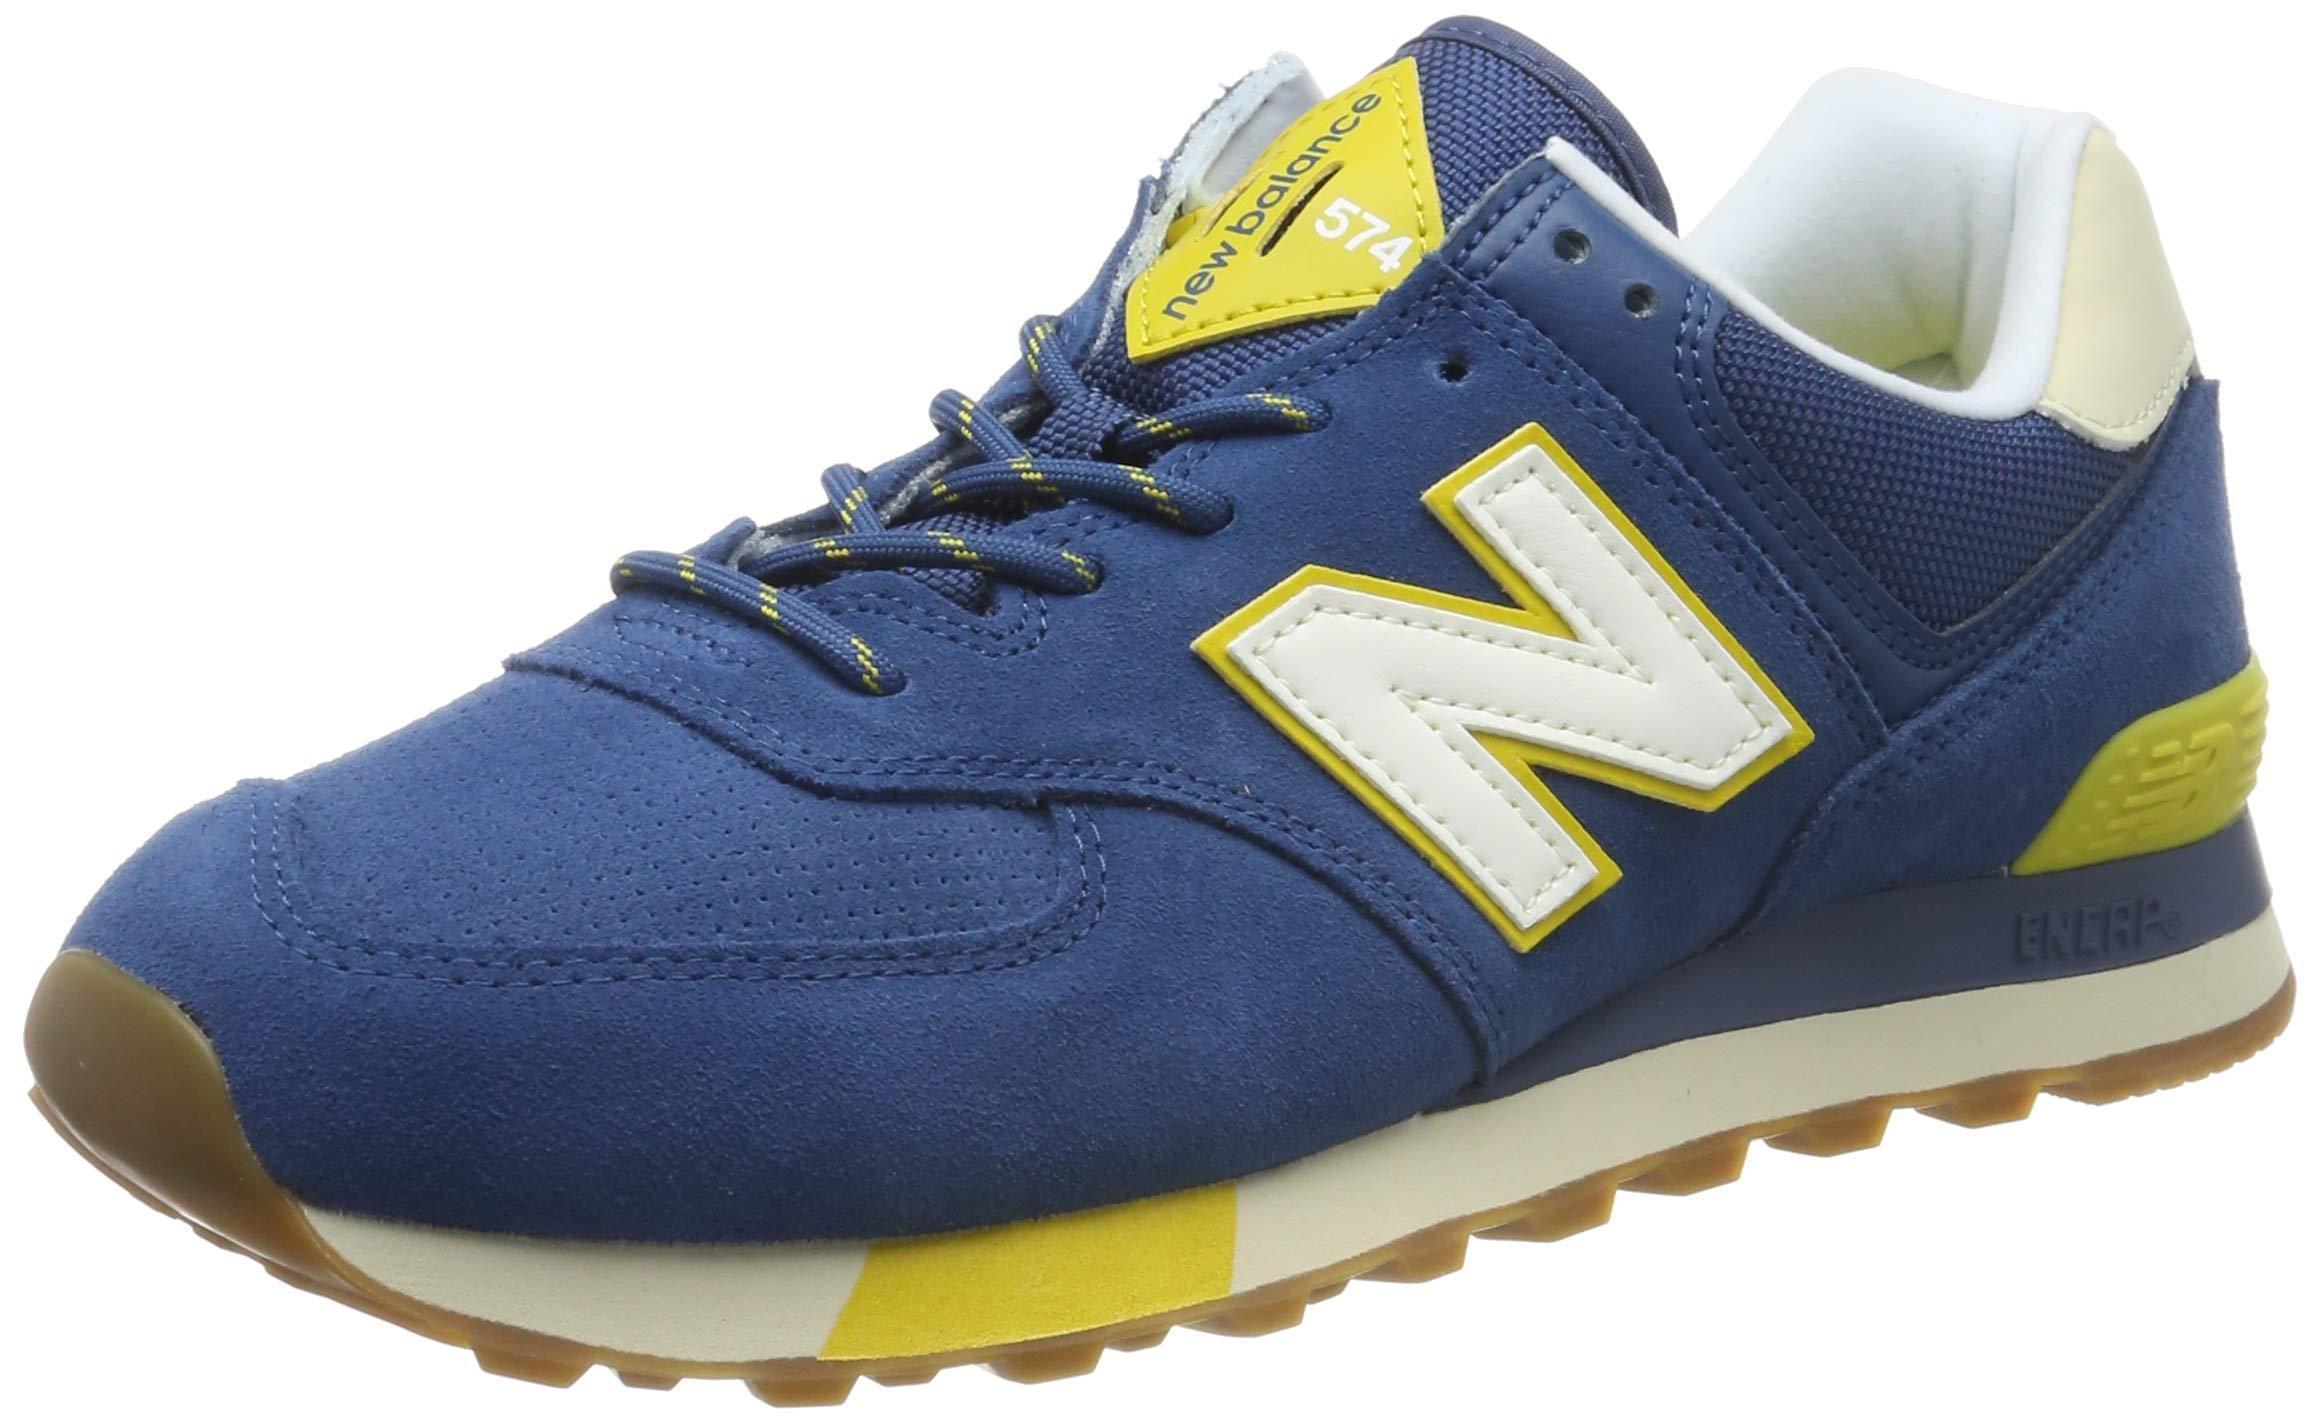 New Balance 574v2 Sneaker in Nubuck Dark Blue/Bone (Blue) for Men - Save  62% - Lyst